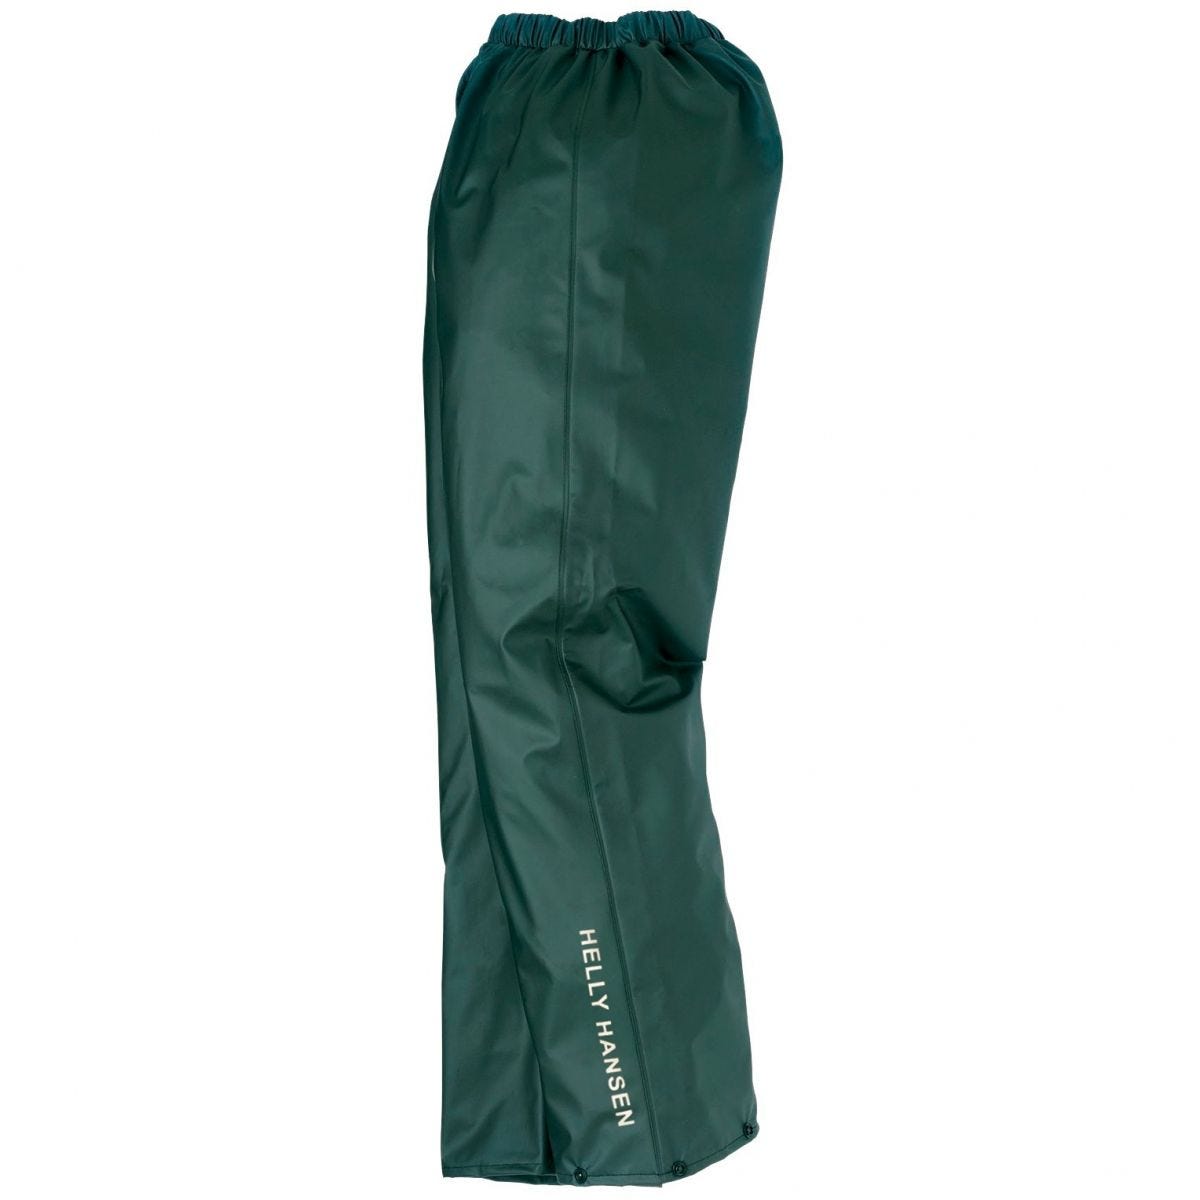 Pantalon de pluie imperméable Voss vert - Helly Hansen - Taille XL 0